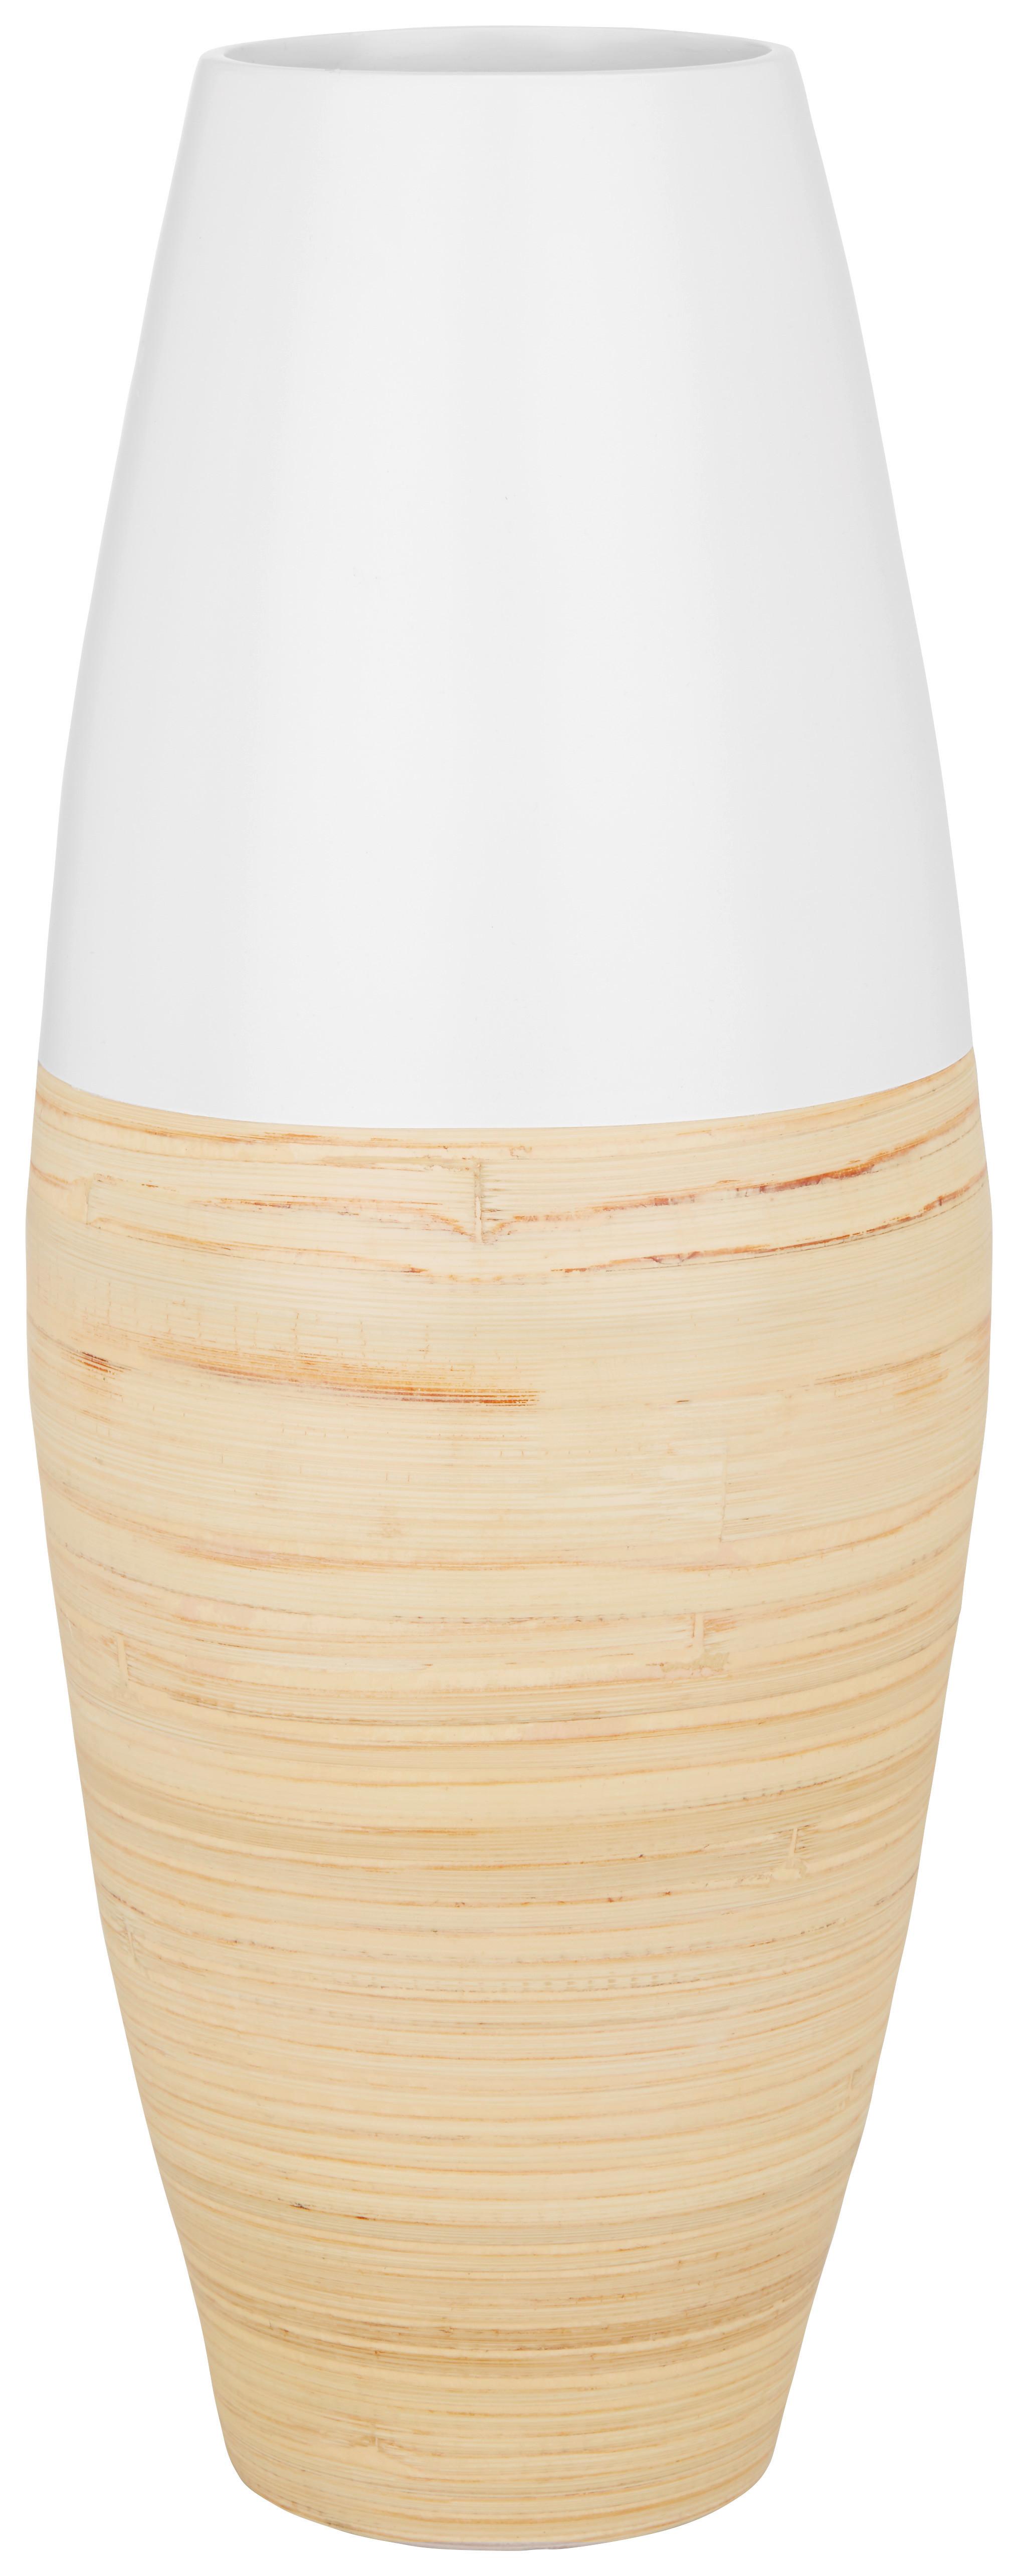 Vase Naturelle Weiß/Natur - Naturfarben/Weiß, LIFESTYLE, Holz (19/50cm) - Zandiara